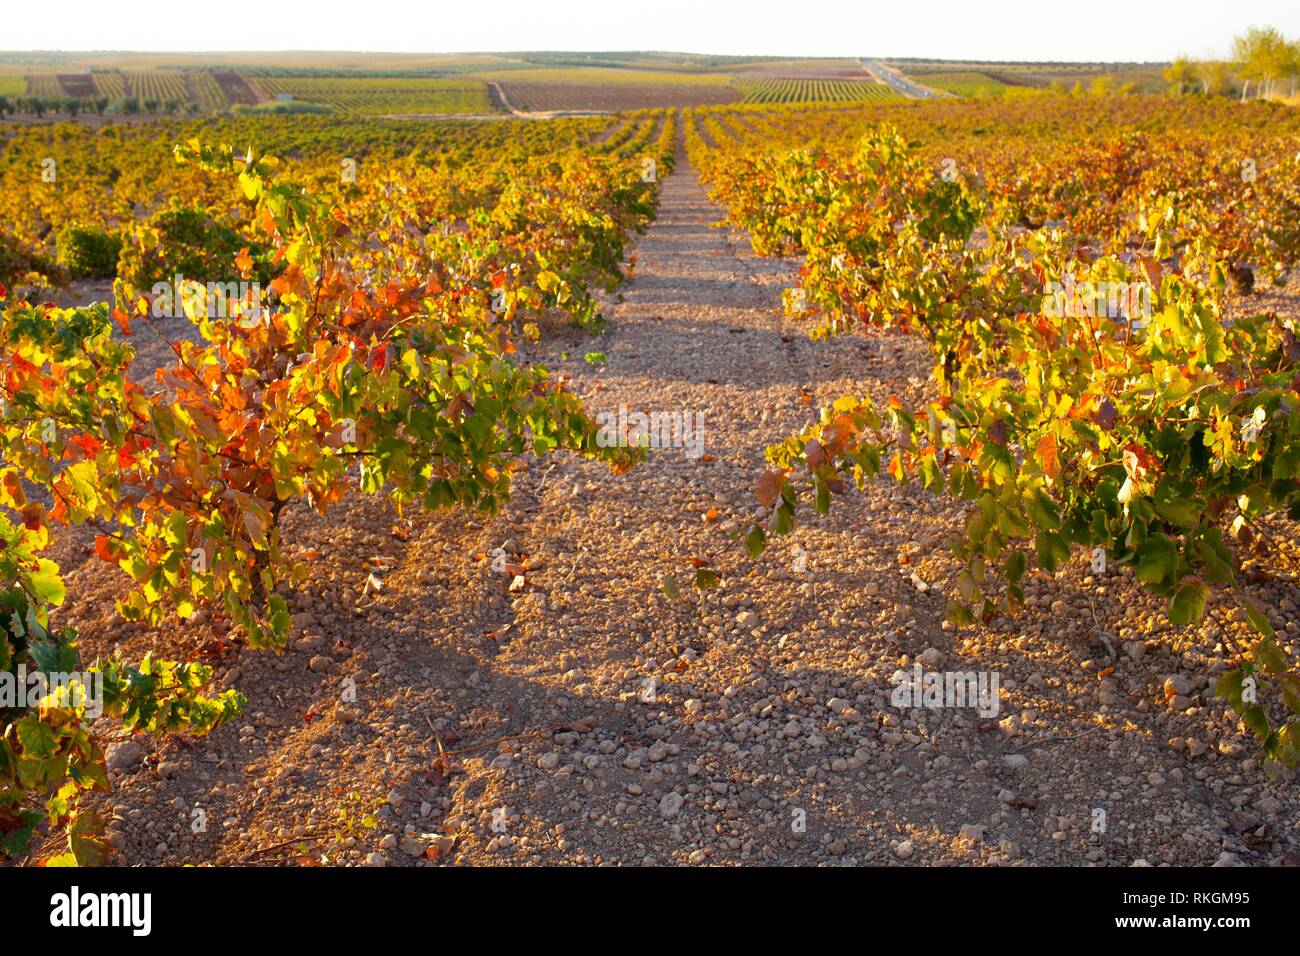 Vines plantation rows under october sunset light at Tierra de Barros, Extremadura, Spain. Stock Photo